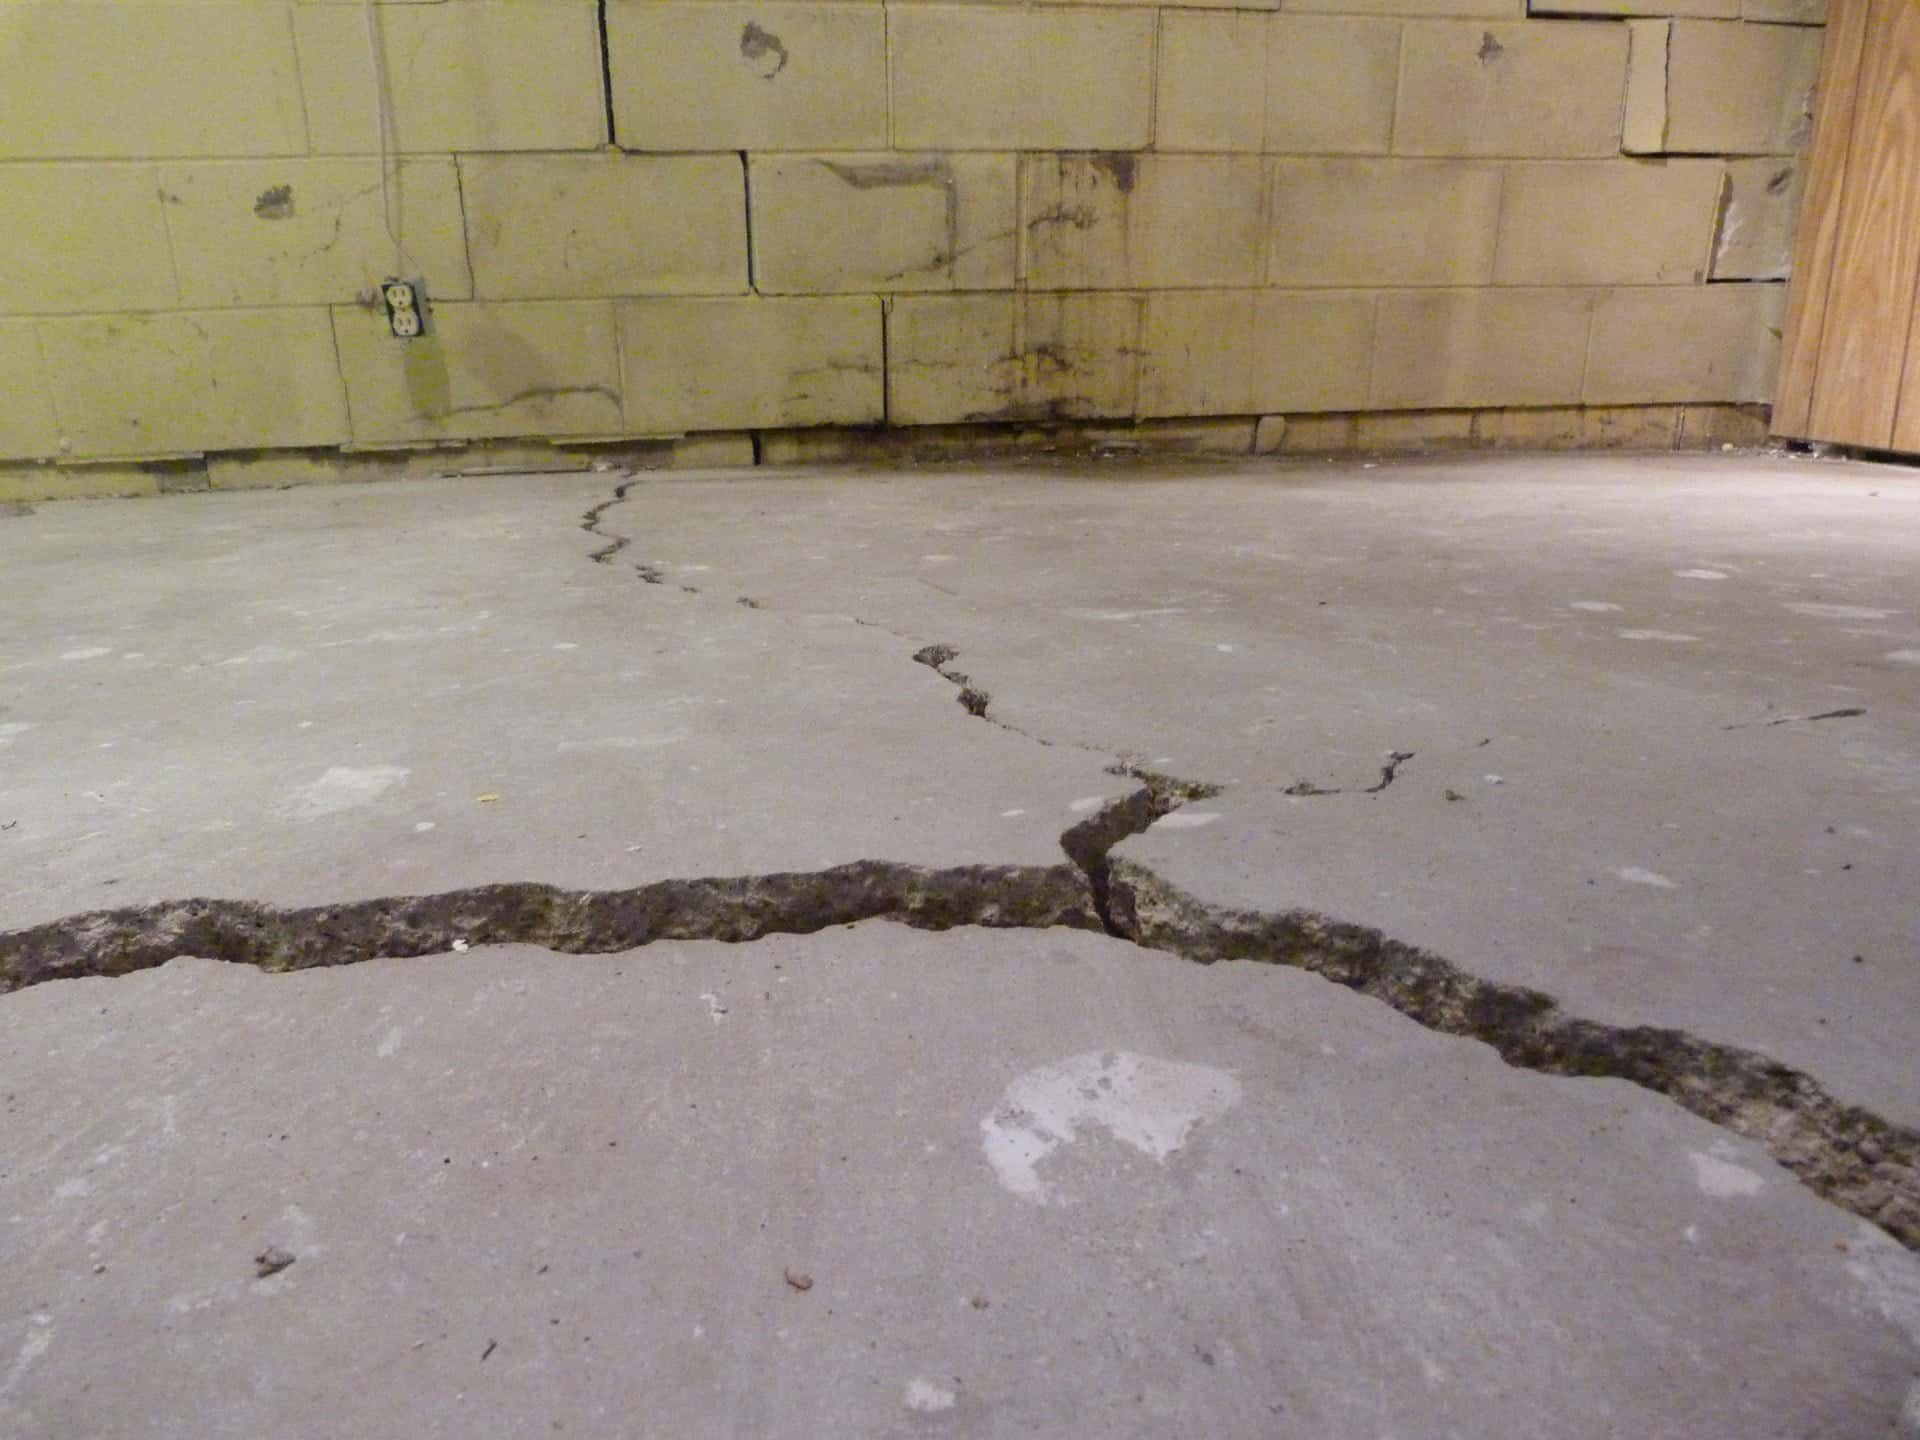 Leveling Concrete Floors & Interior Slabs - Oklahoma City